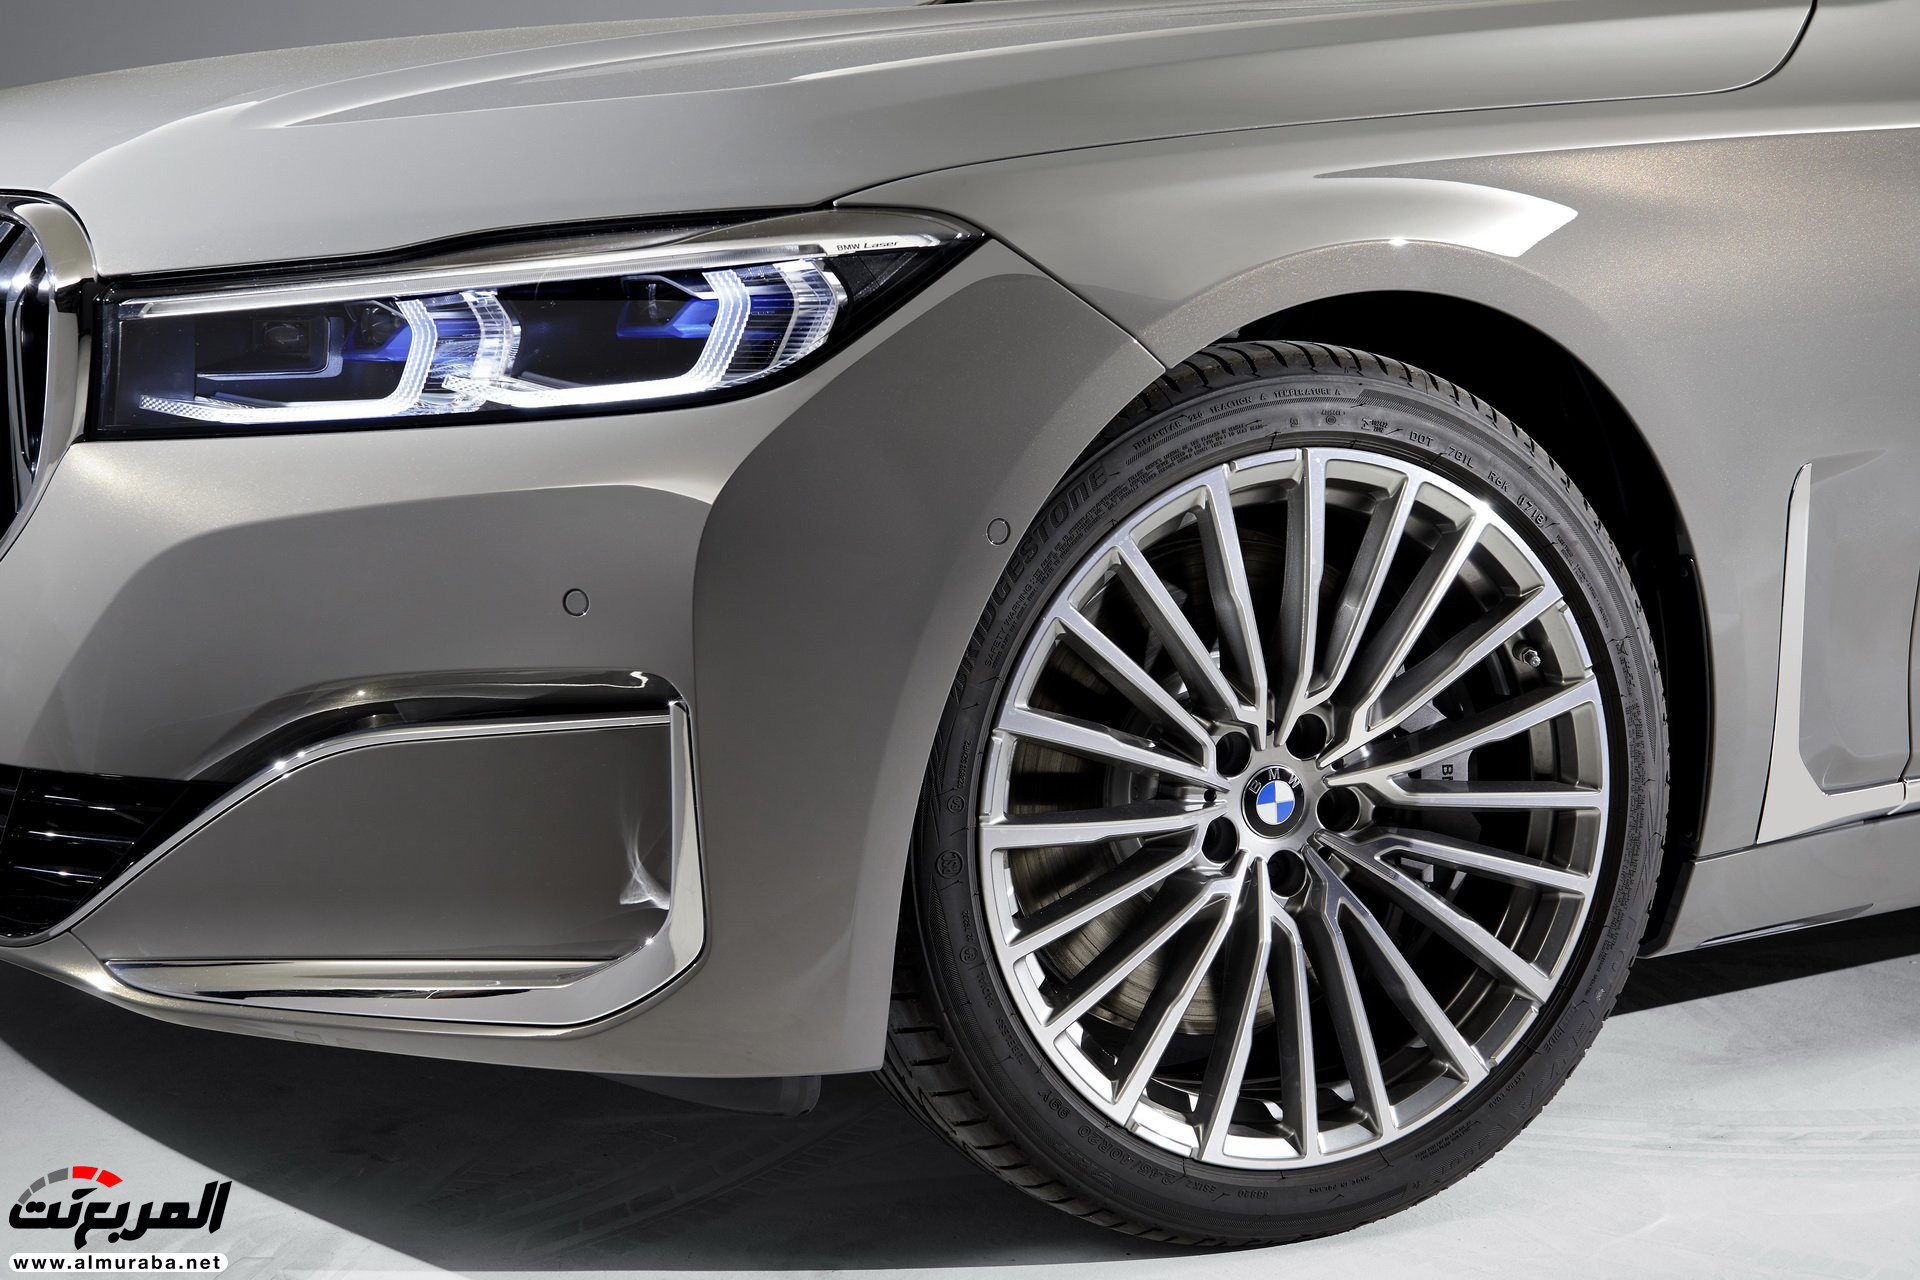 بي ام دبليو الفئة السابعة 2020 المحدثة تكشف نفسها رسمياً "صور ومواصفات" BMW 7 Series 250